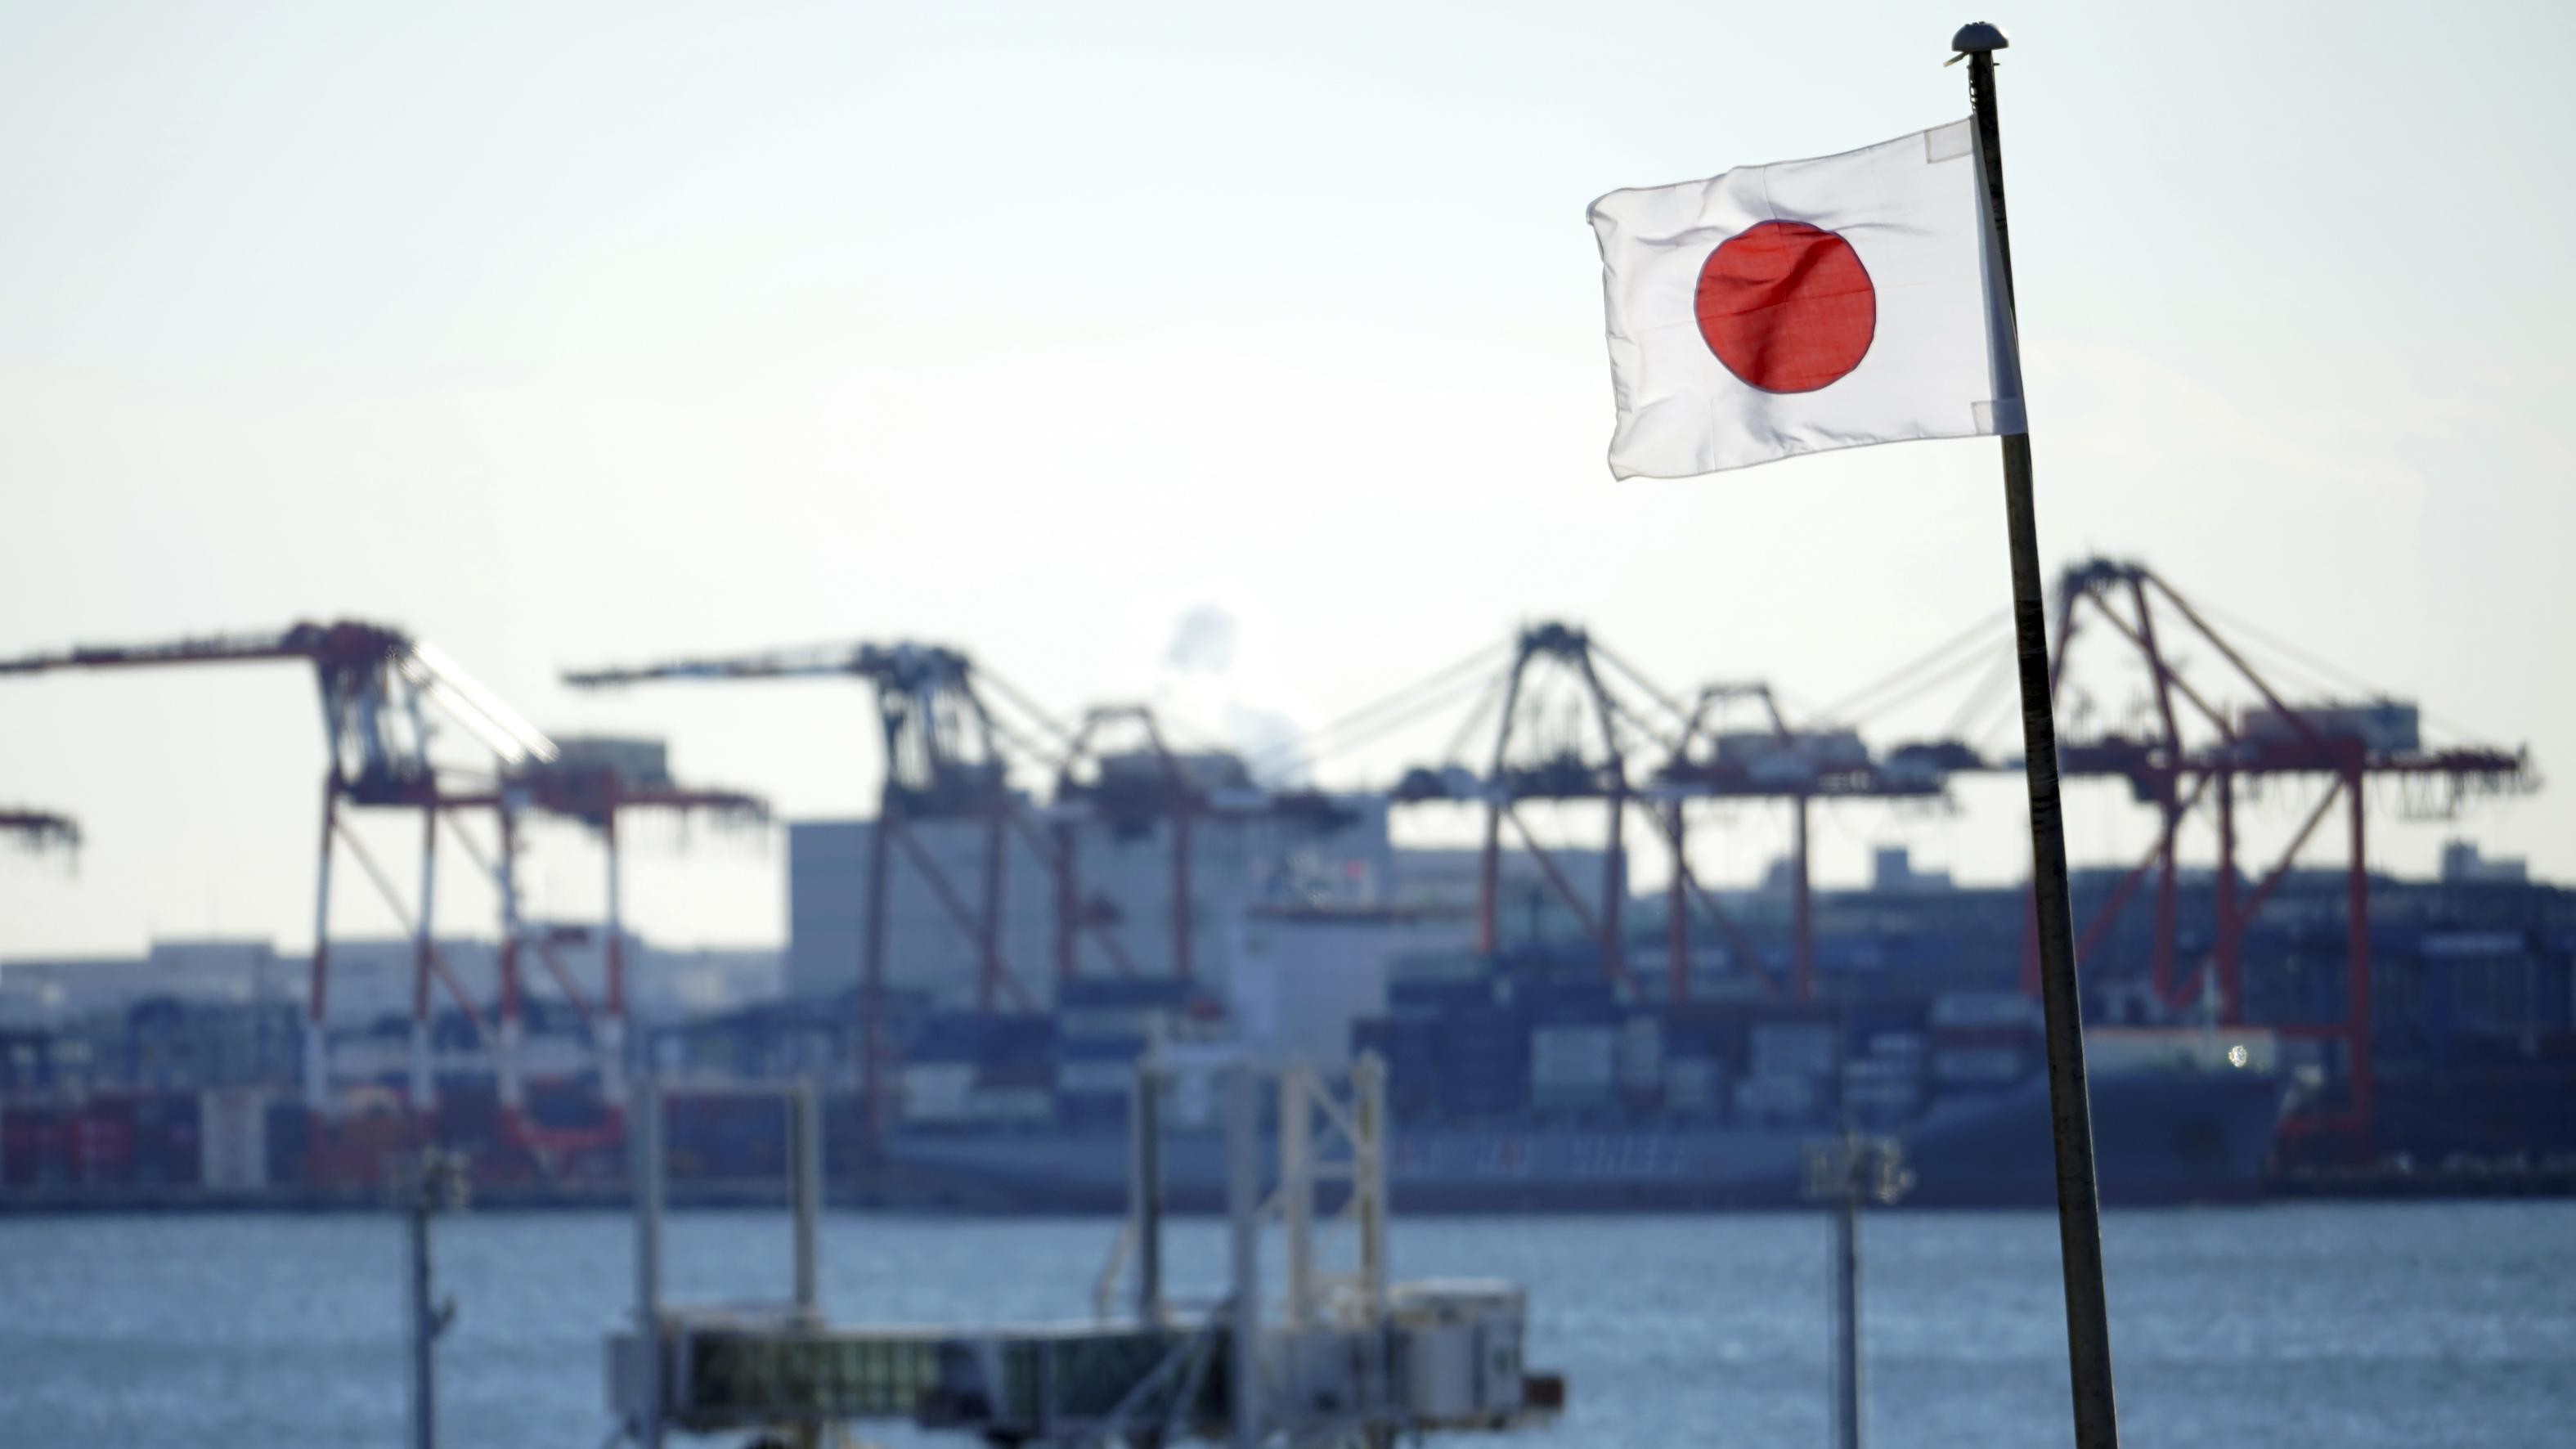 Nhật Bản tung chính sách mới vì lợi ích quốc gia đang bị đe dọa 'hơn bao giờ hết',  Trung Quốc khẳng định thái độ. (Nguồn: AP)